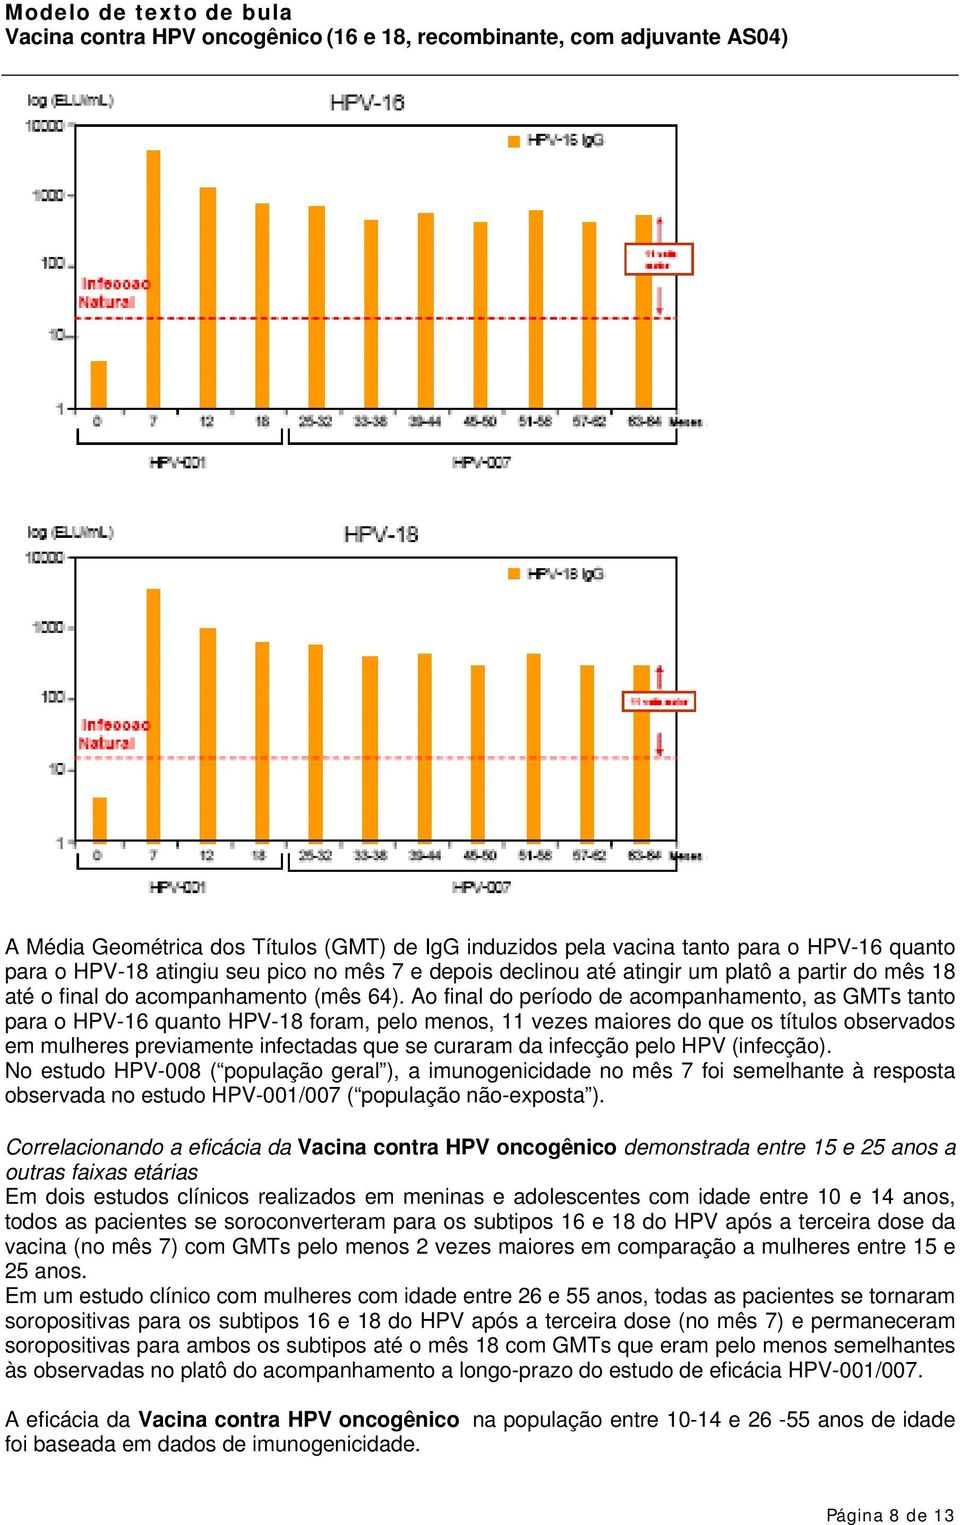 Ao final do período de acompanhamento, as GMTs tanto para o HPV-16 quanto HPV-18 foram, pelo menos, 11 vezes maiores do que os títulos observados em mulheres previamente infectadas que se curaram da